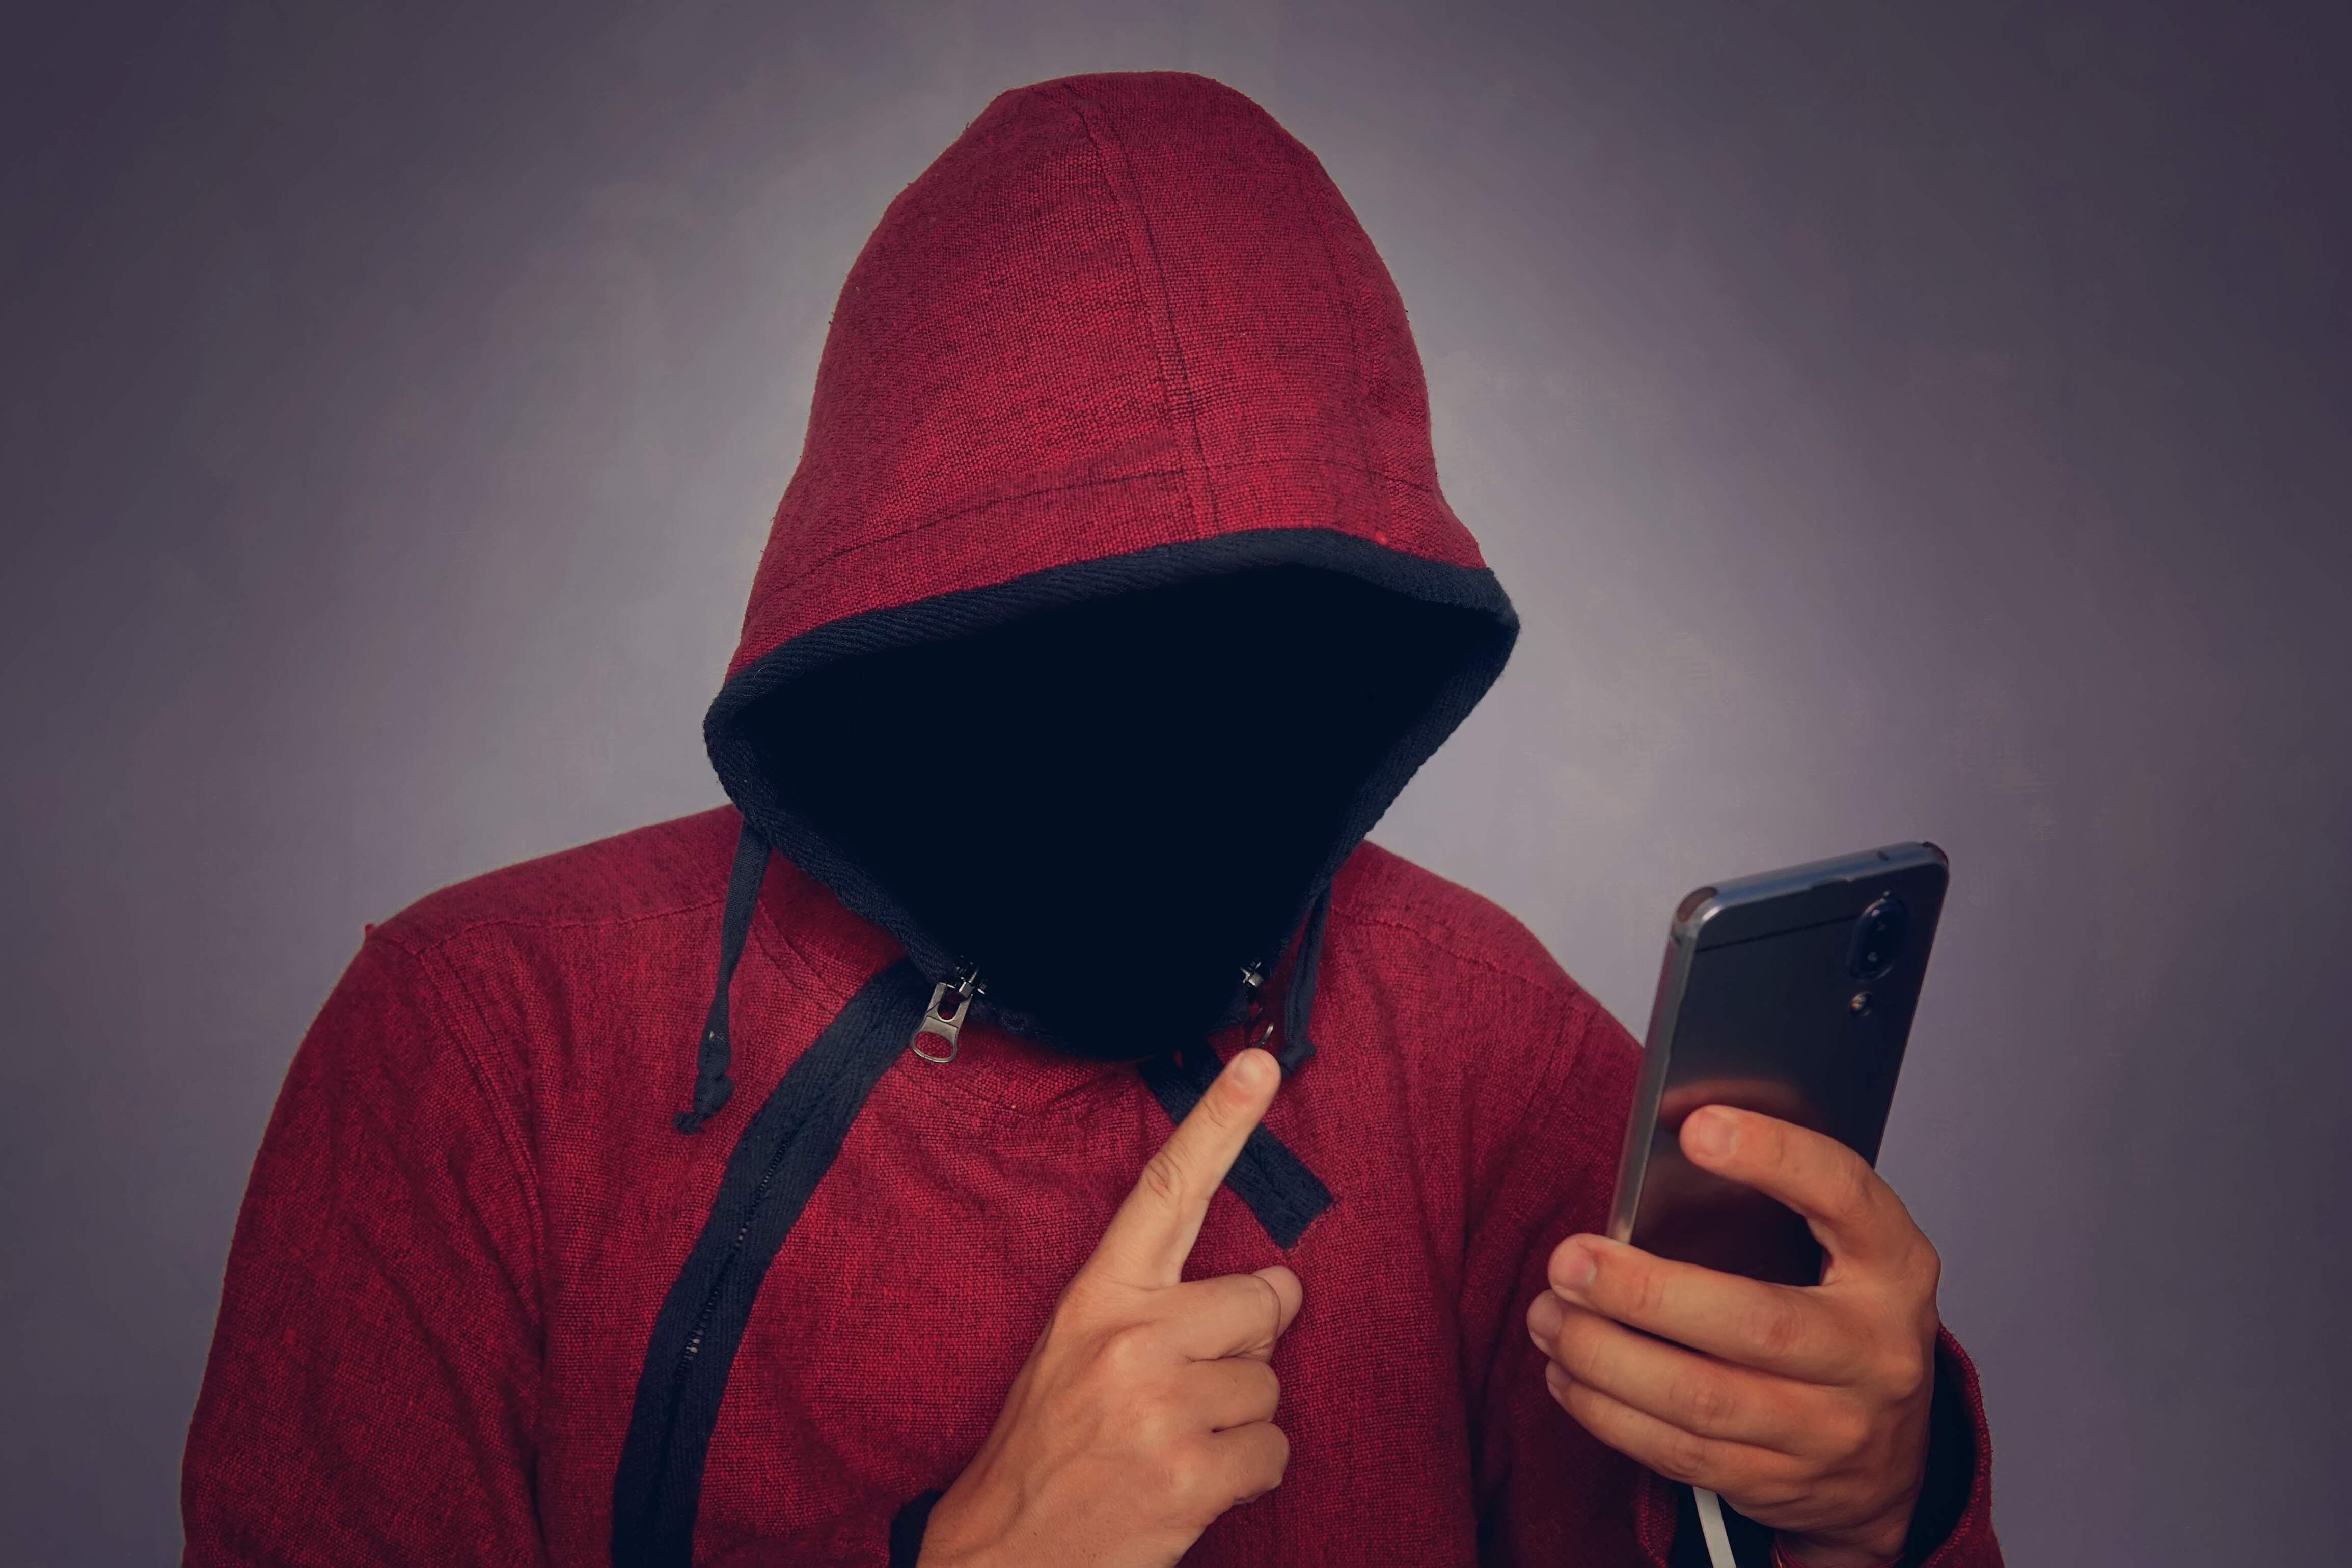 Pessoa com um moleton de capuz e ziper, com o rosto oculto dentro do capuz, segurando um celular, com um fundo escuro atrás.